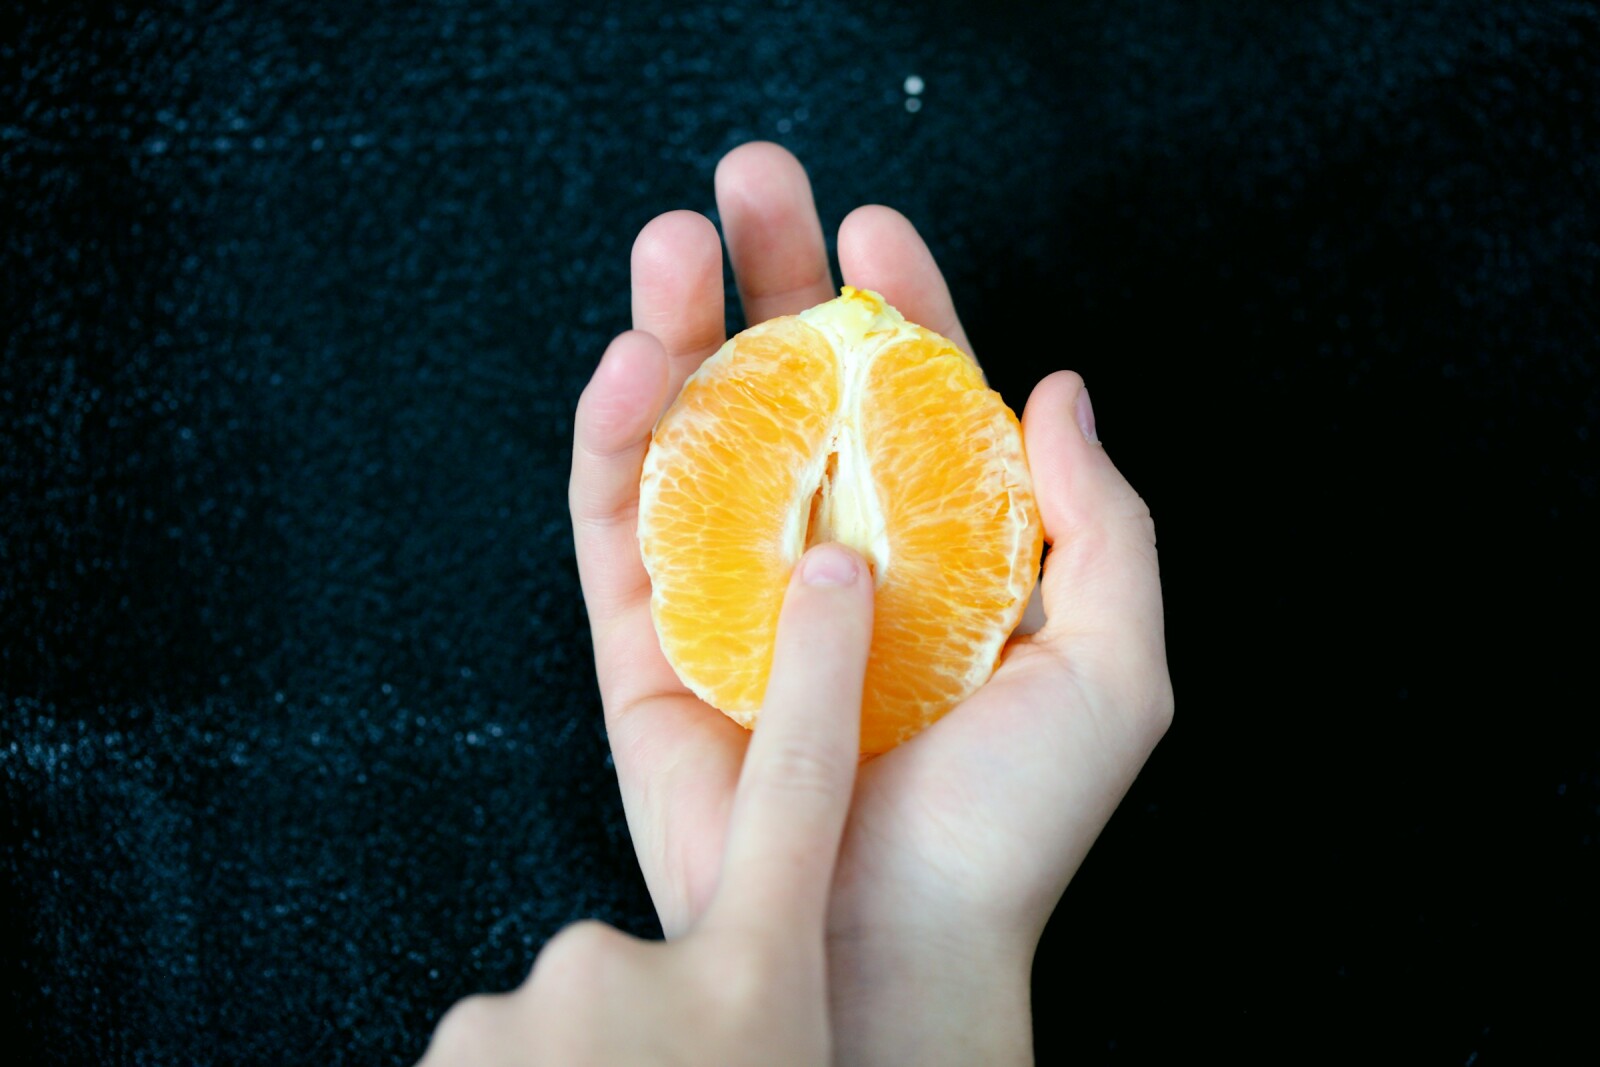 половинка апельсина